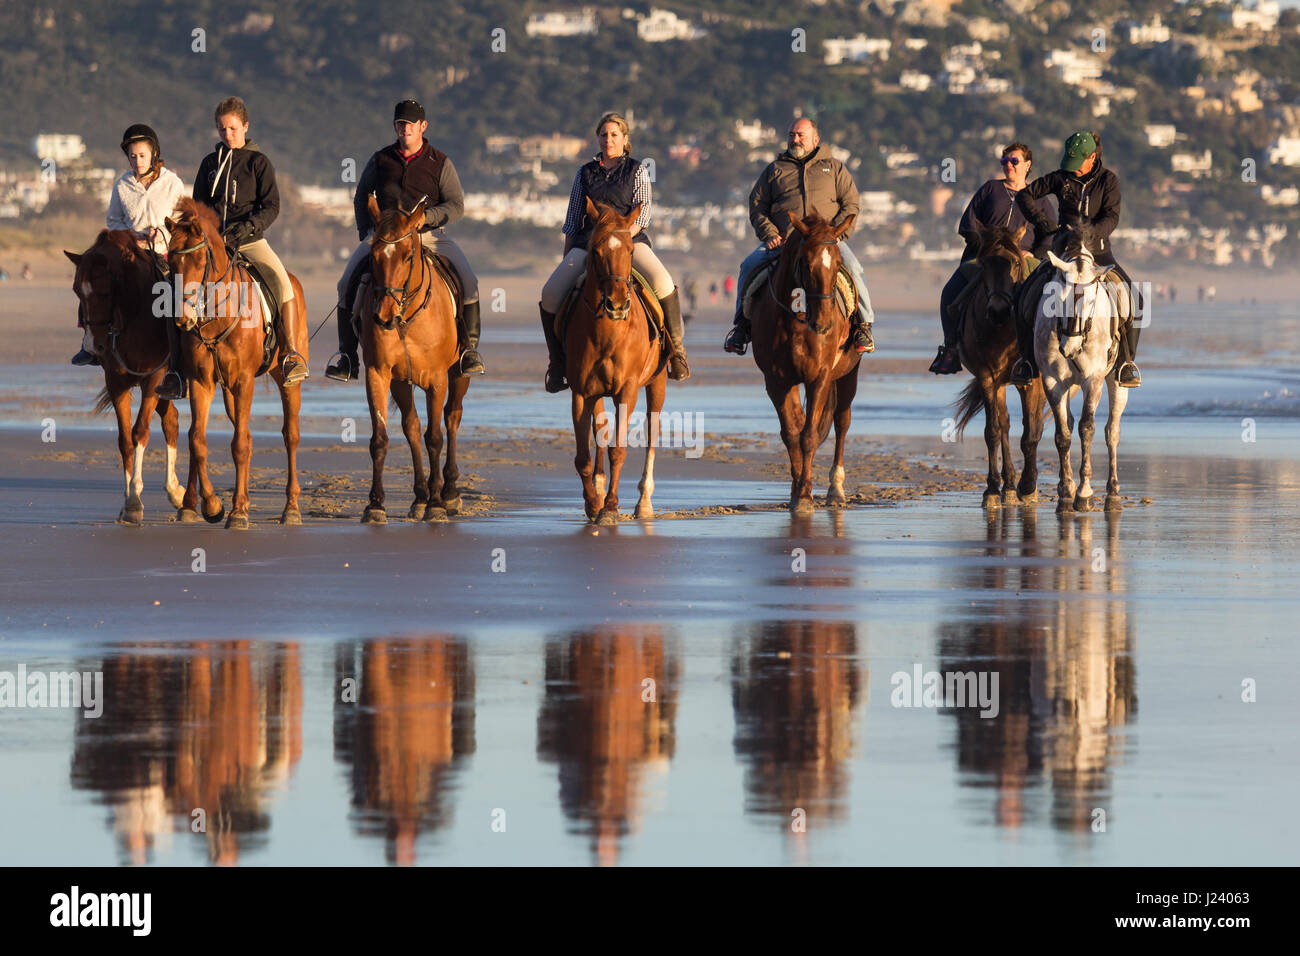 ZAHARA DE LOS ATUNES, CADIZ, SPAIN - MARCH 20, 2016: People having fun riding horses on the beach at Zahara de los Atunes, Cadiz, Andalusia, Spain Stock Photo